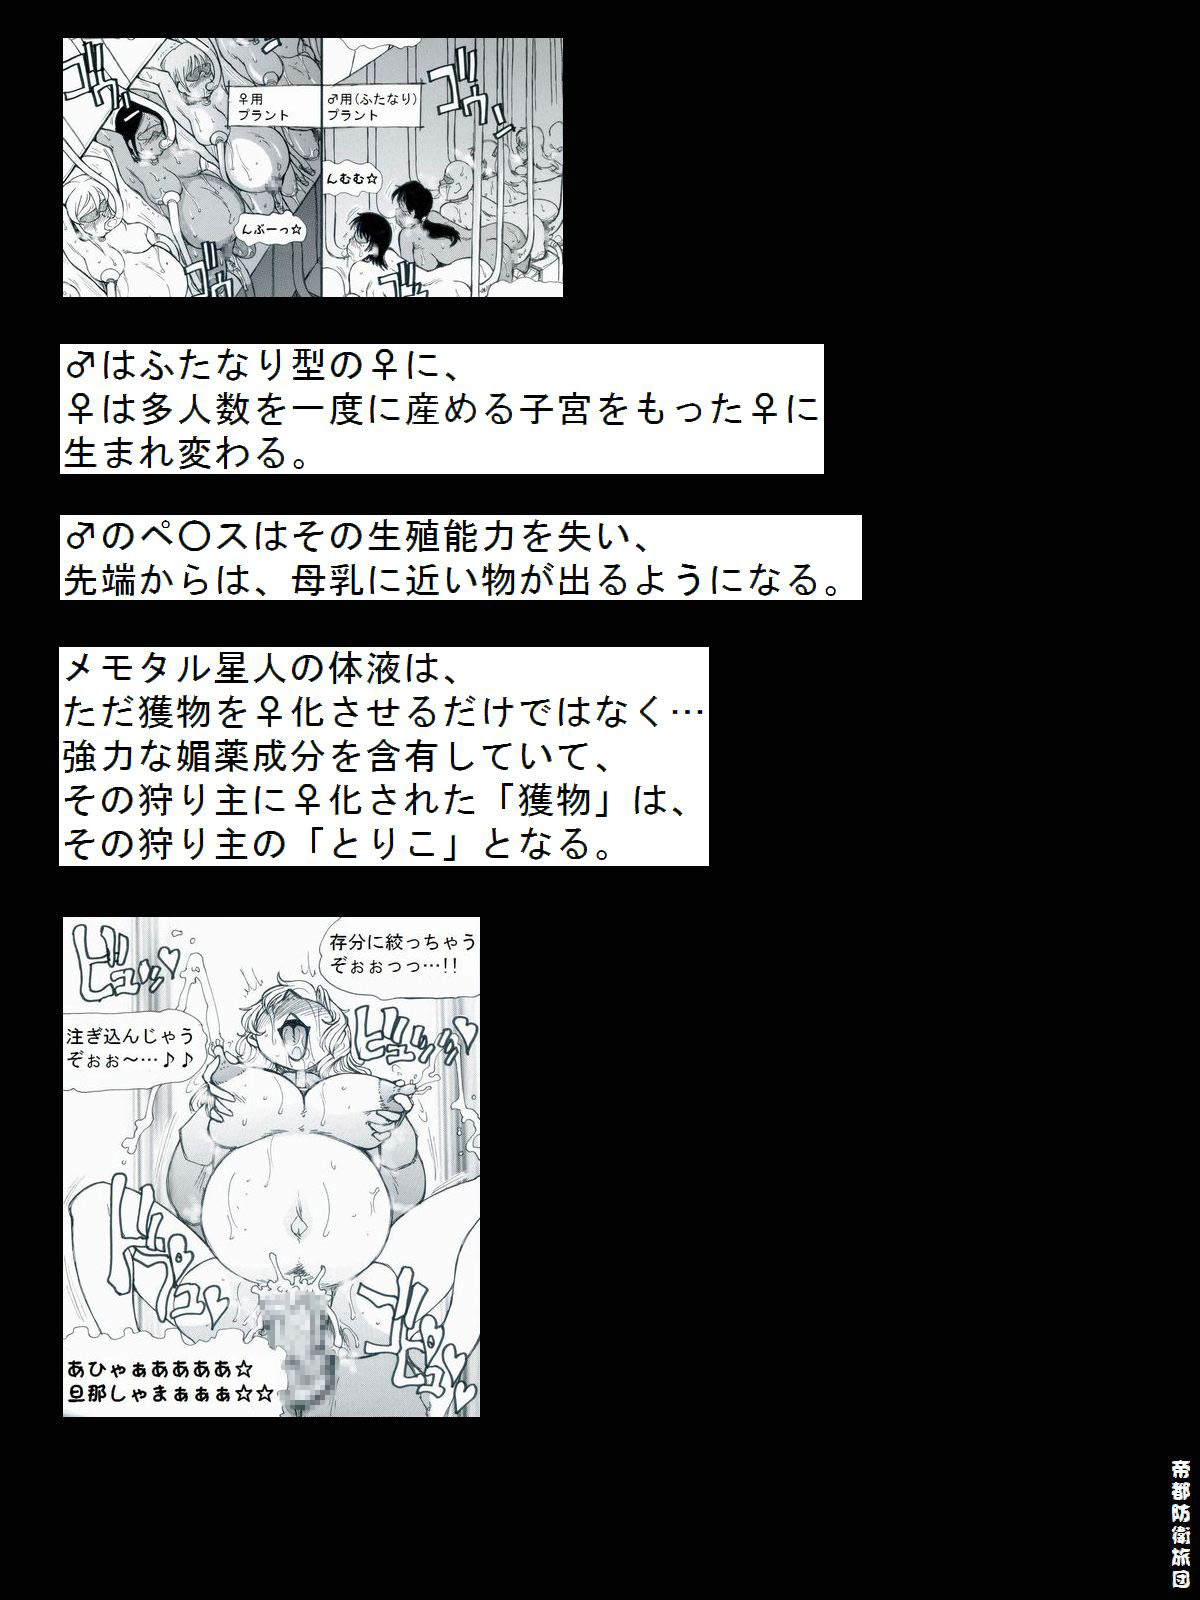 [帝都防衛旅団] RTKBOOK 9-3 「M○Xいぢり(3) 『PANPAN-MAN』」